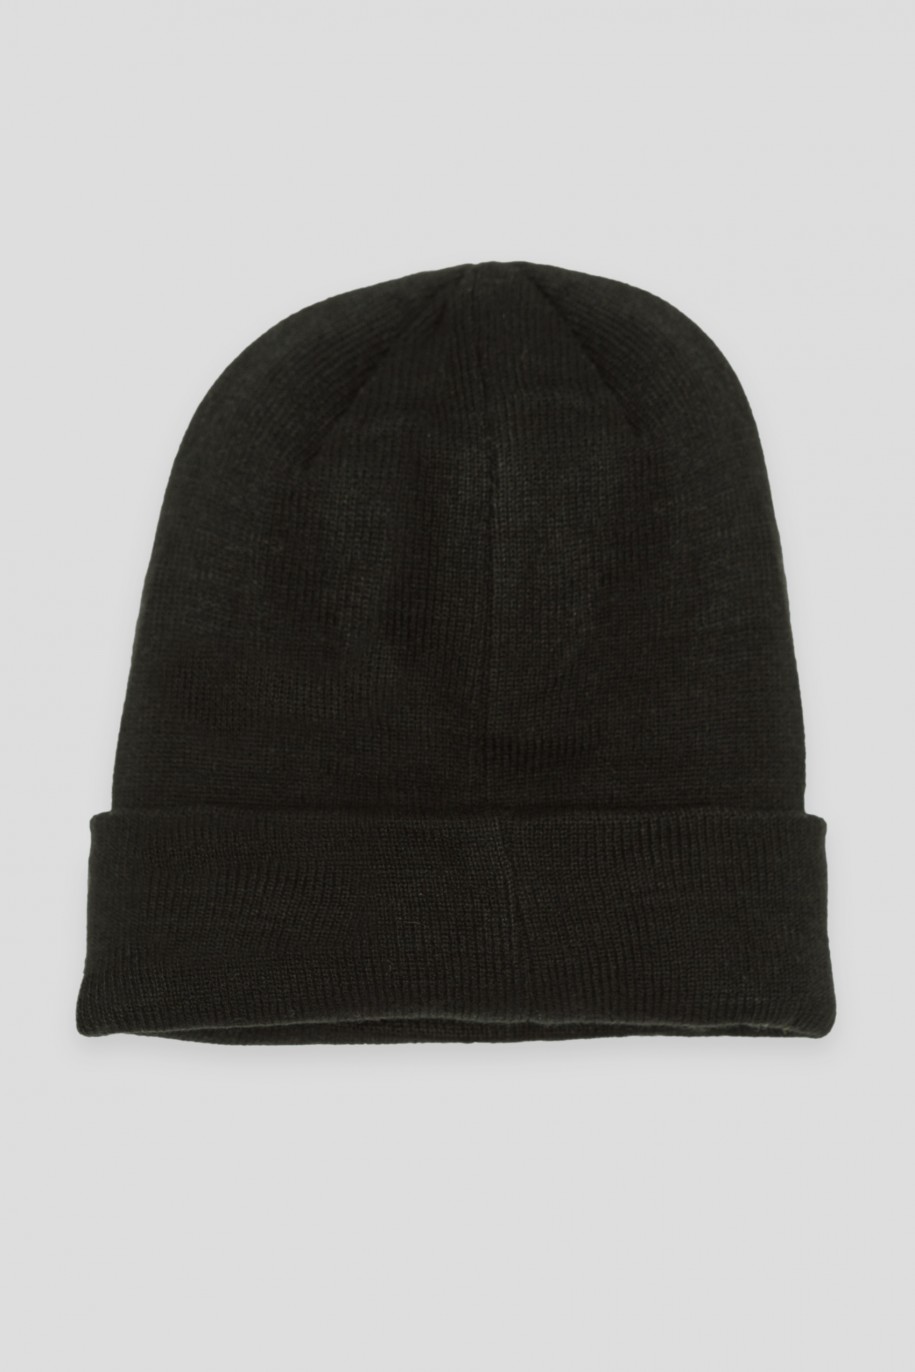 Czarna czapka z nadrukami - 44283